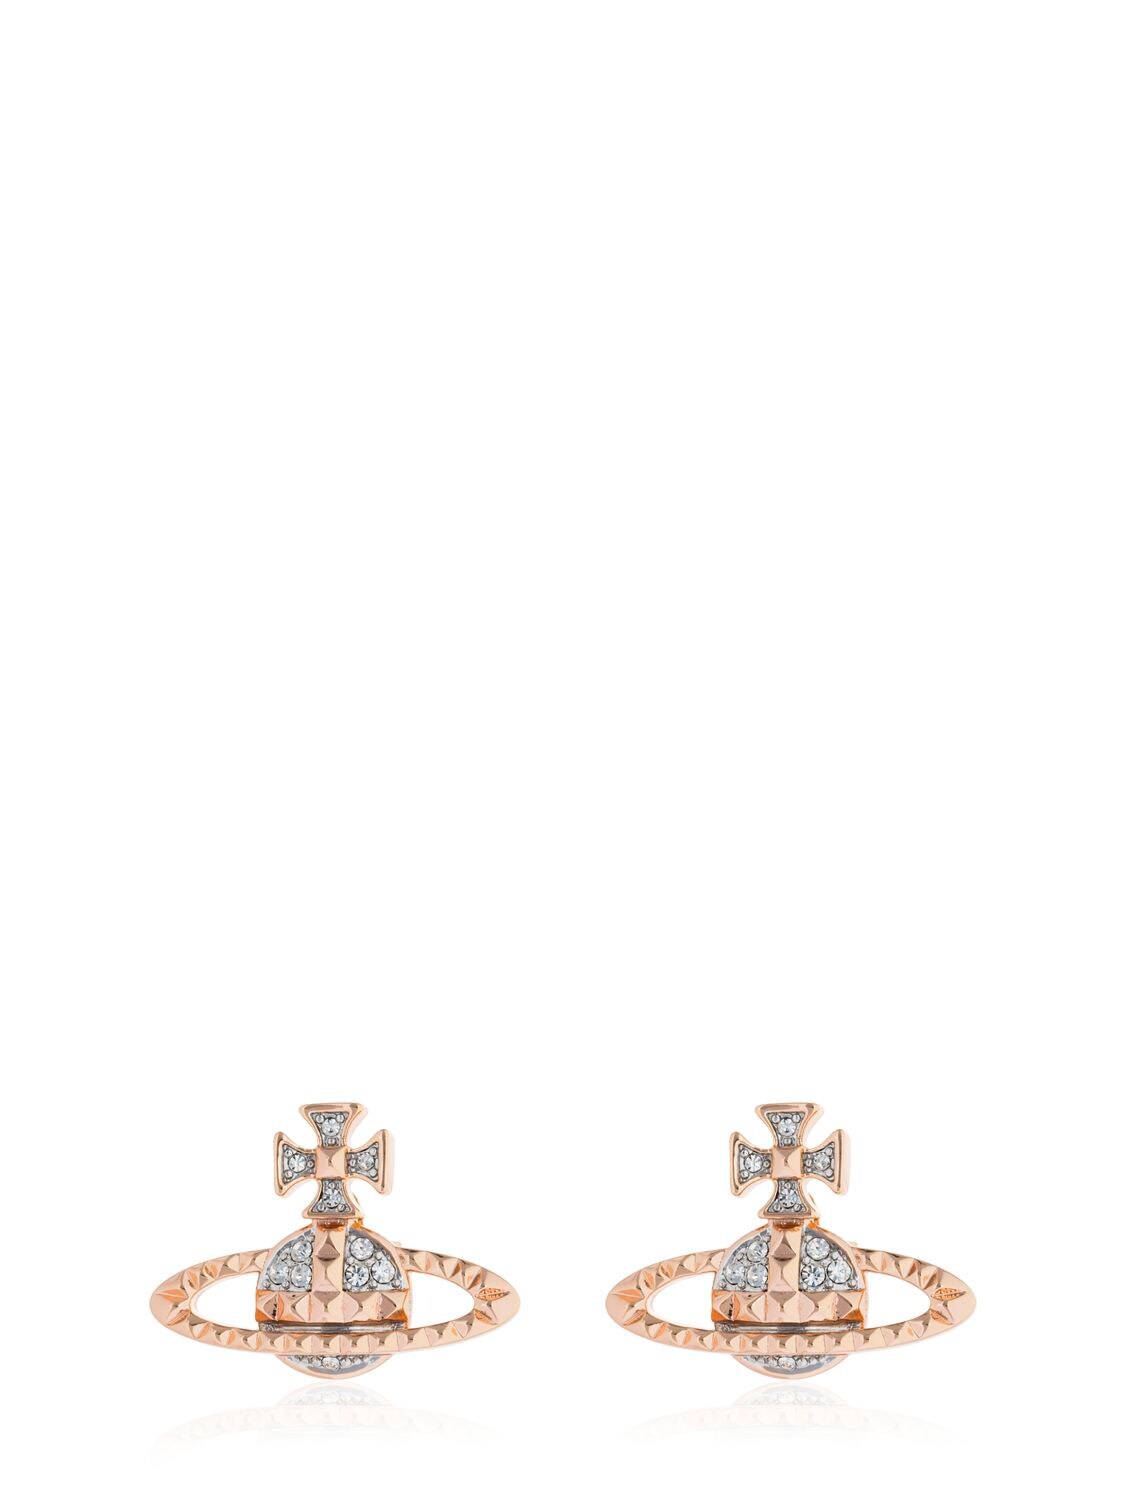 Vivienne Westwood Mayfair Orbit Stud Earrings In Rose Gold